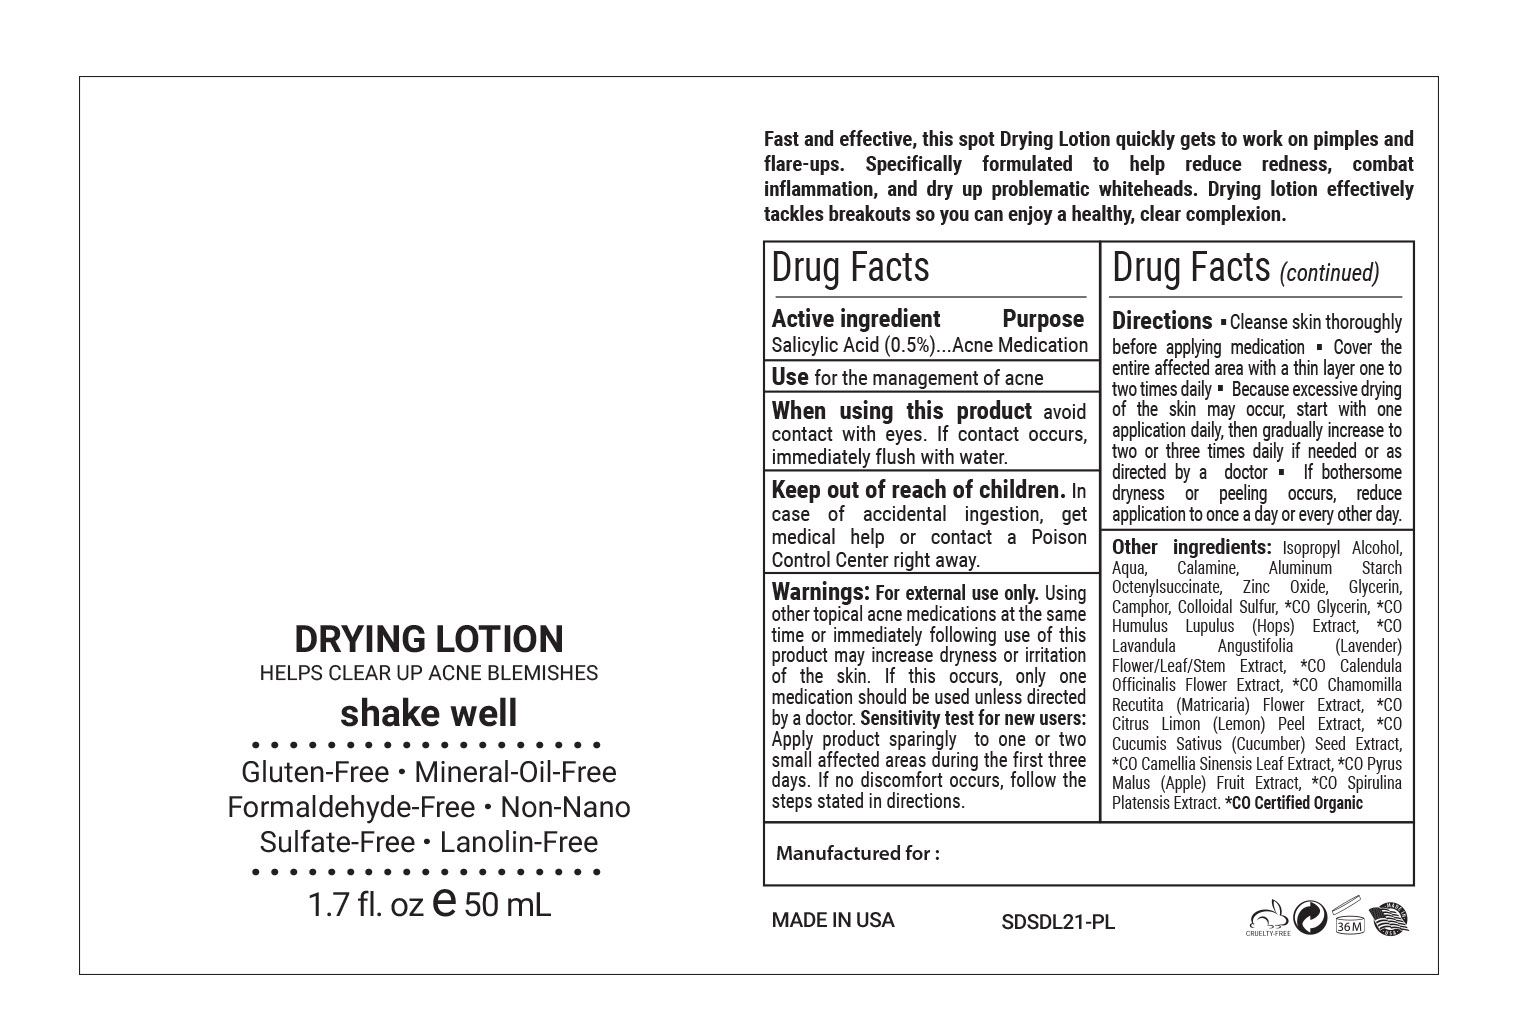 FDA Drying Lotion.jpg